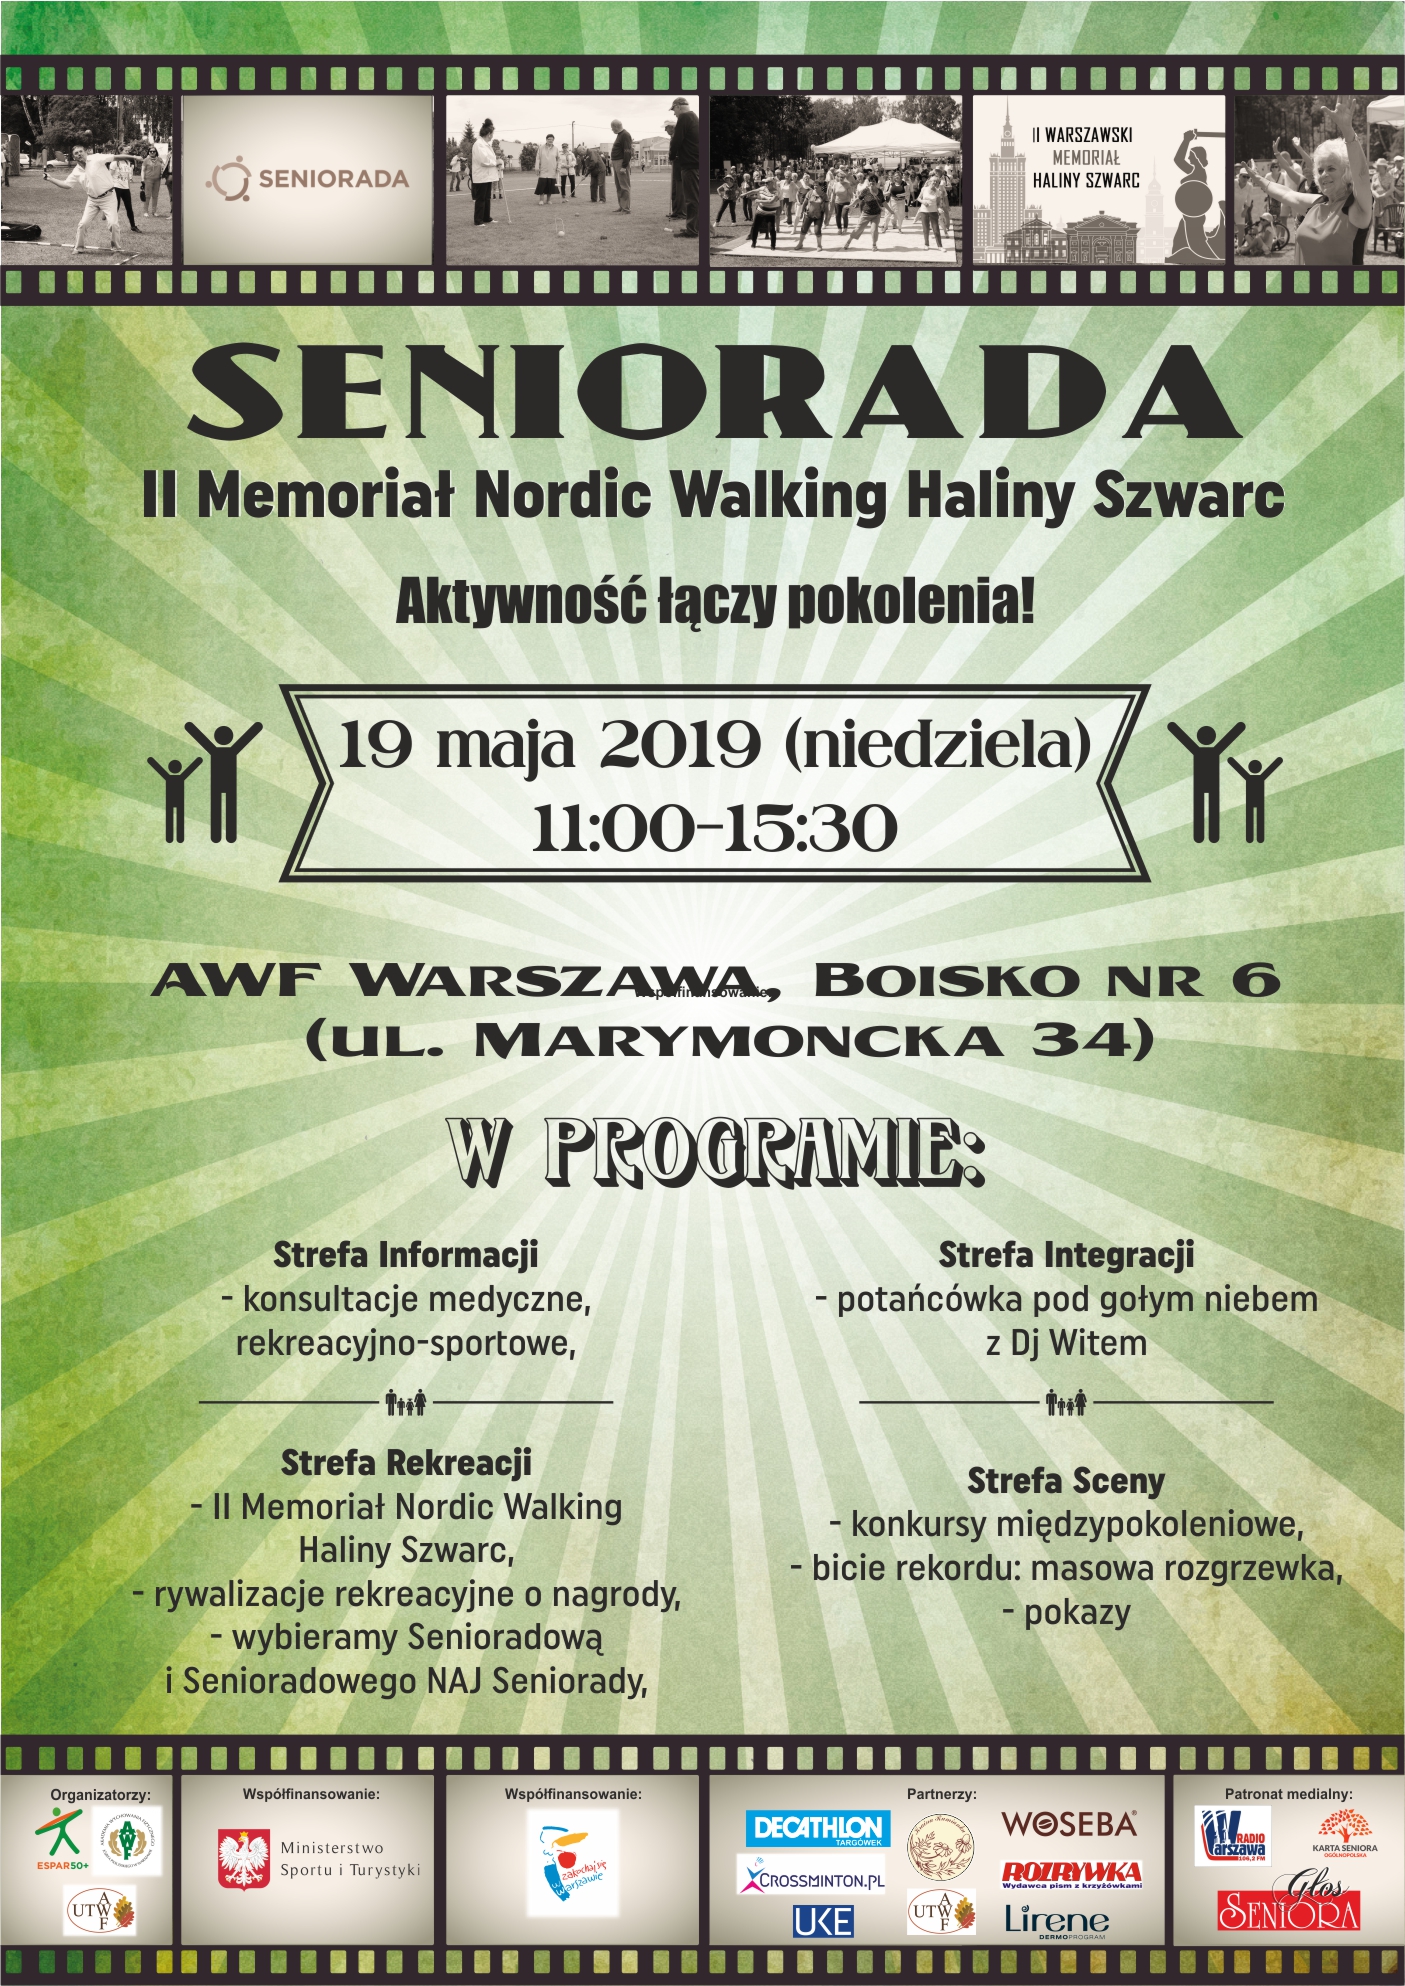 Piknik Seniorada w Warszawie 19 maja i Memoriał Nordic Walking imienia Haliny Szwarc